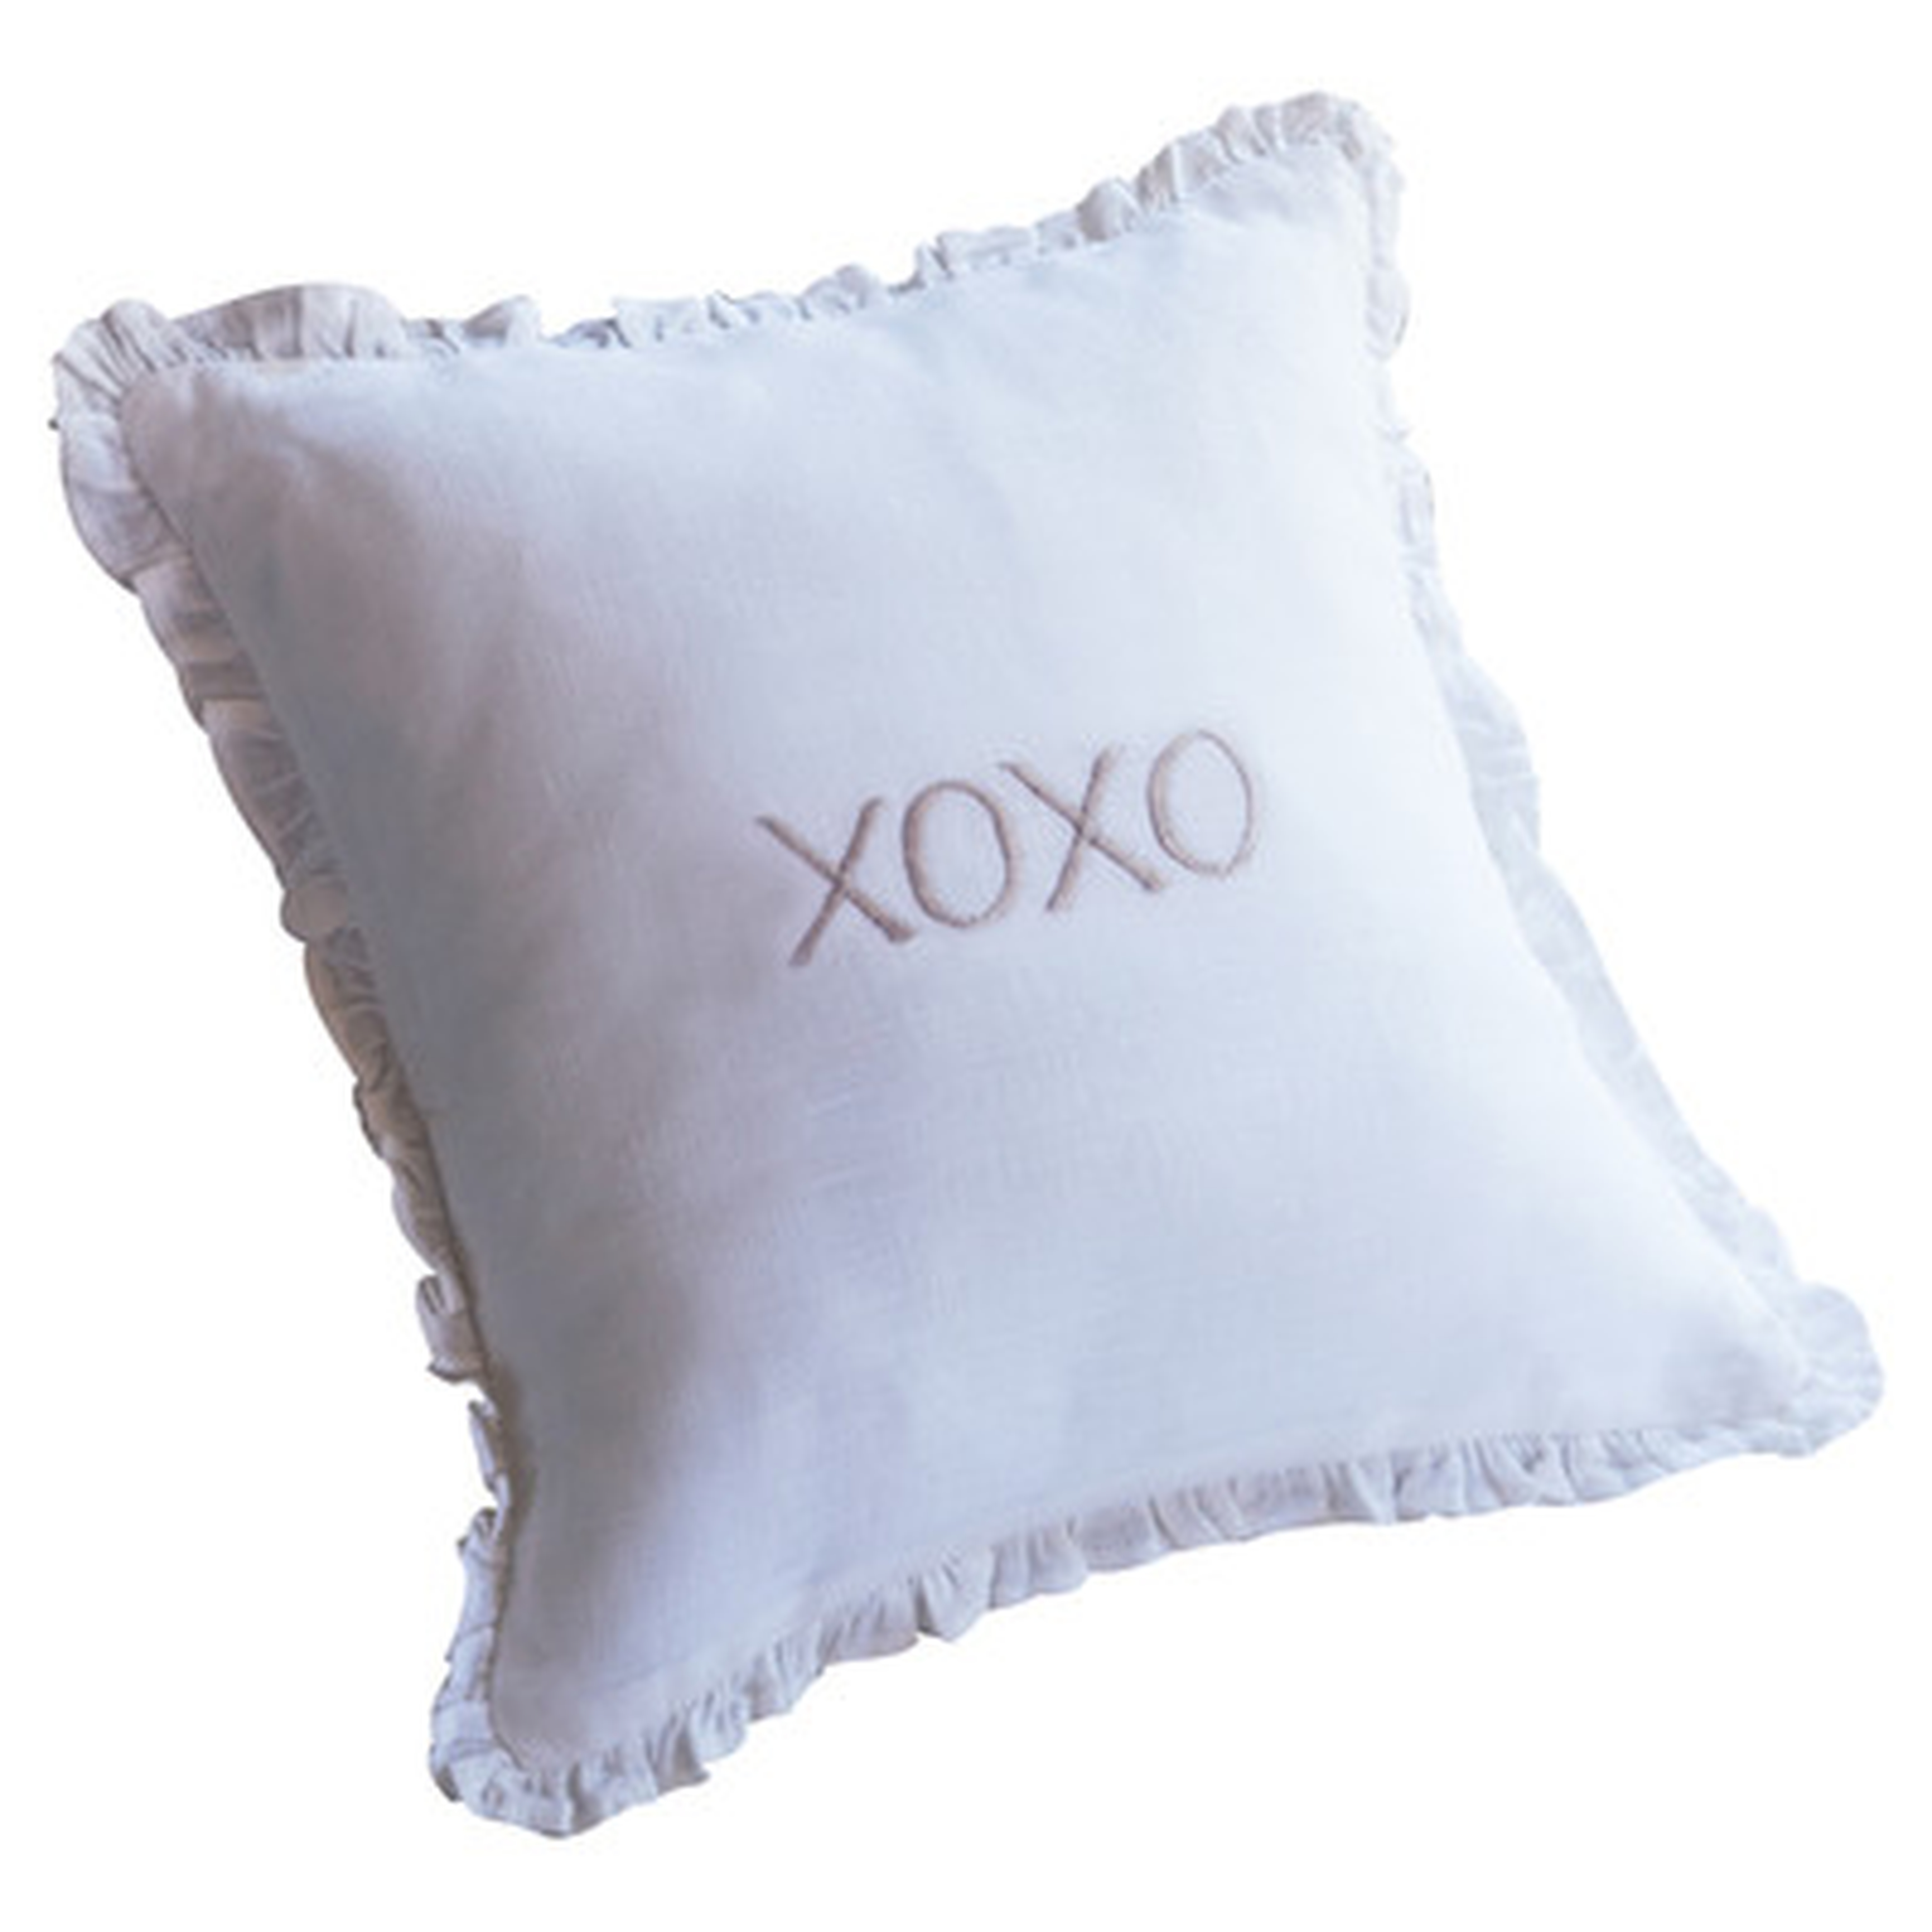 XOXO Toss Linen Throw Pillow - Wayfair